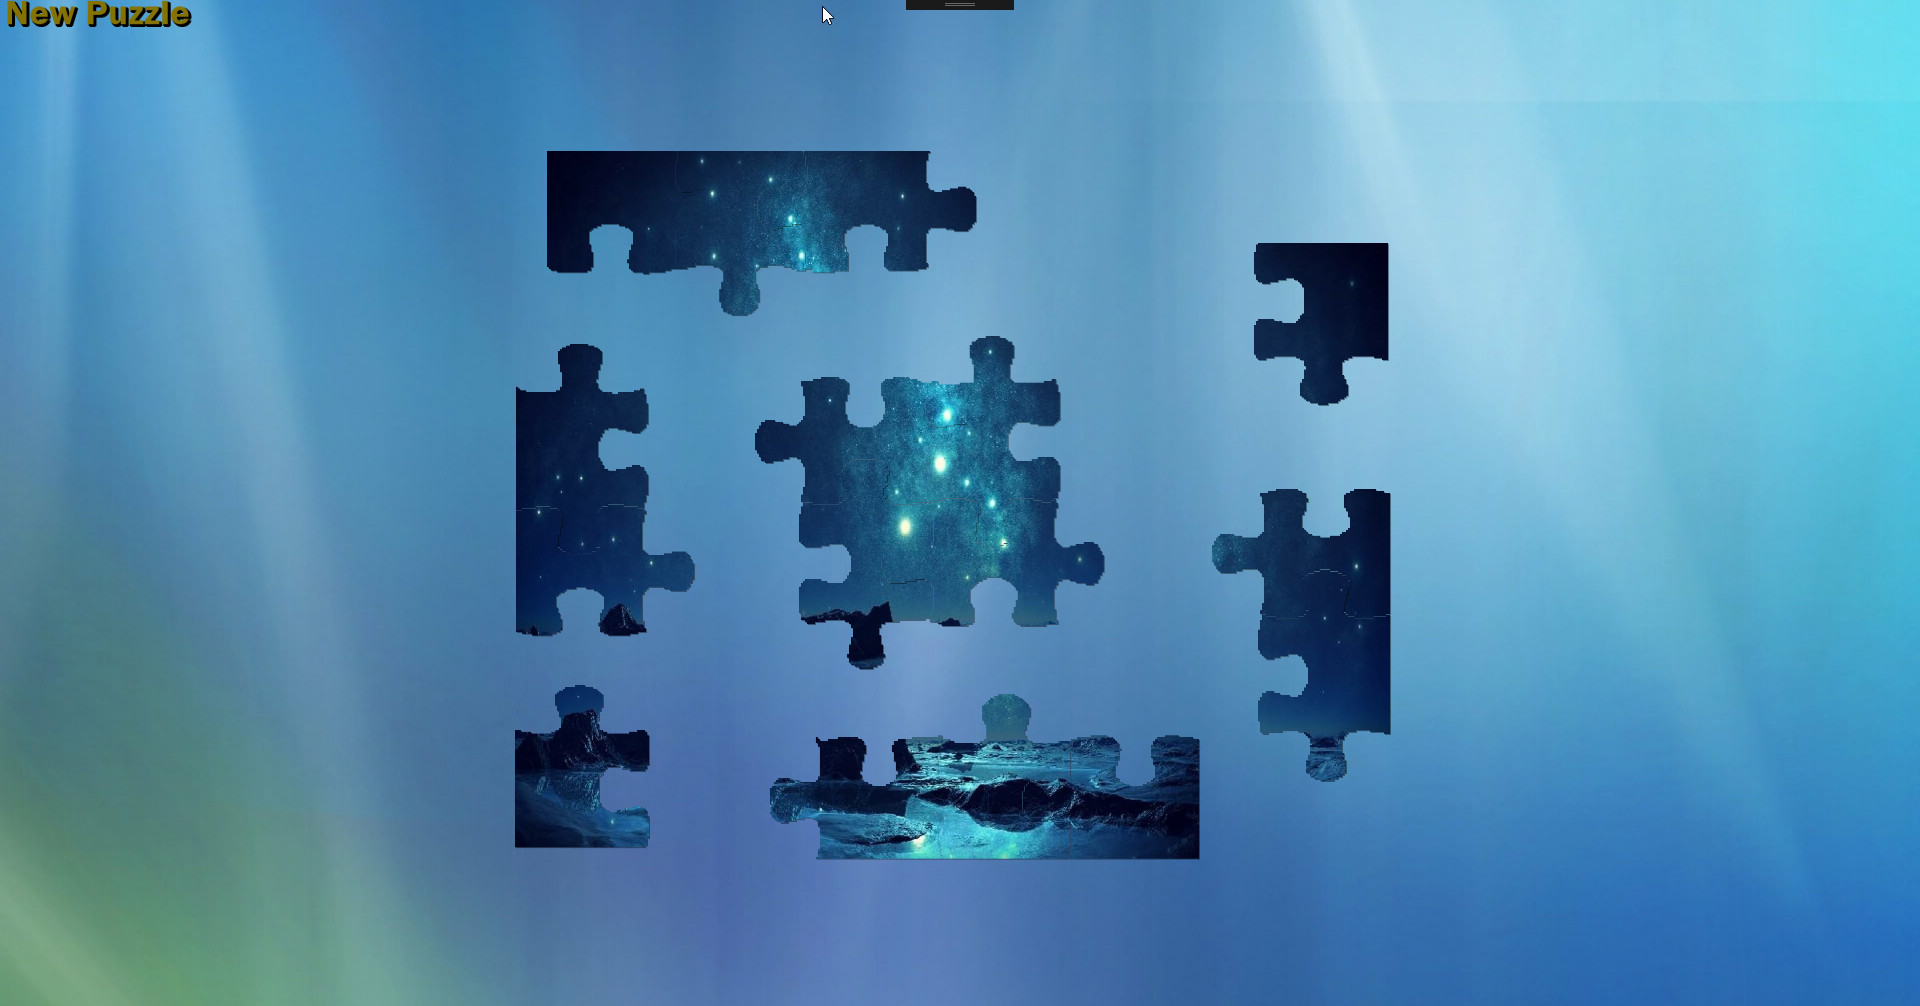 Digital Jigsaw Puzzle - Press Kit